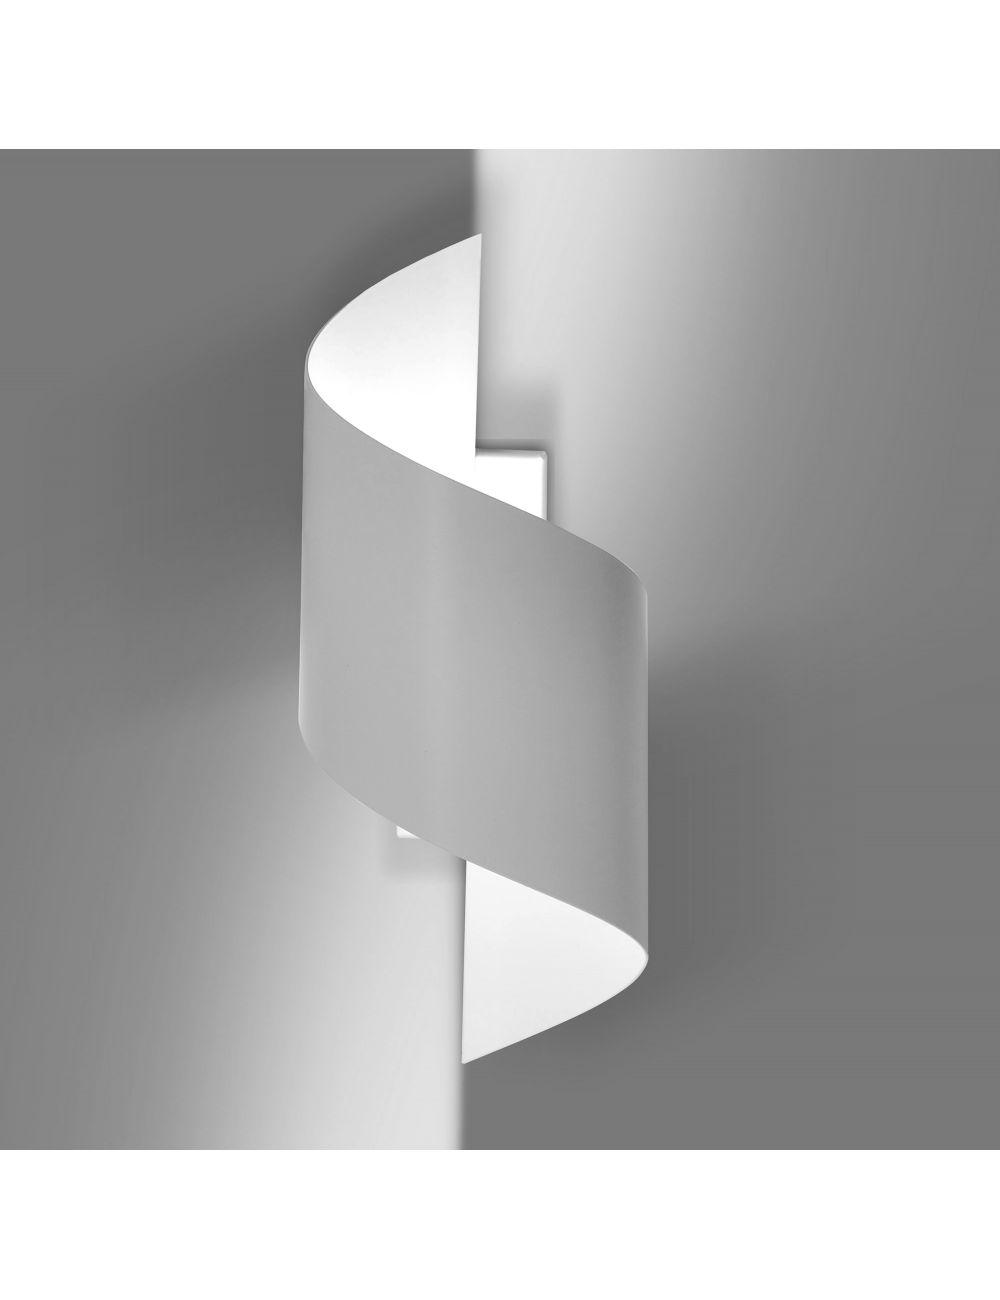 SPINER WHITE 920/1 nowoczesny kinkiet LED zakręcony biały różne kolory DESIGN EMIBIG